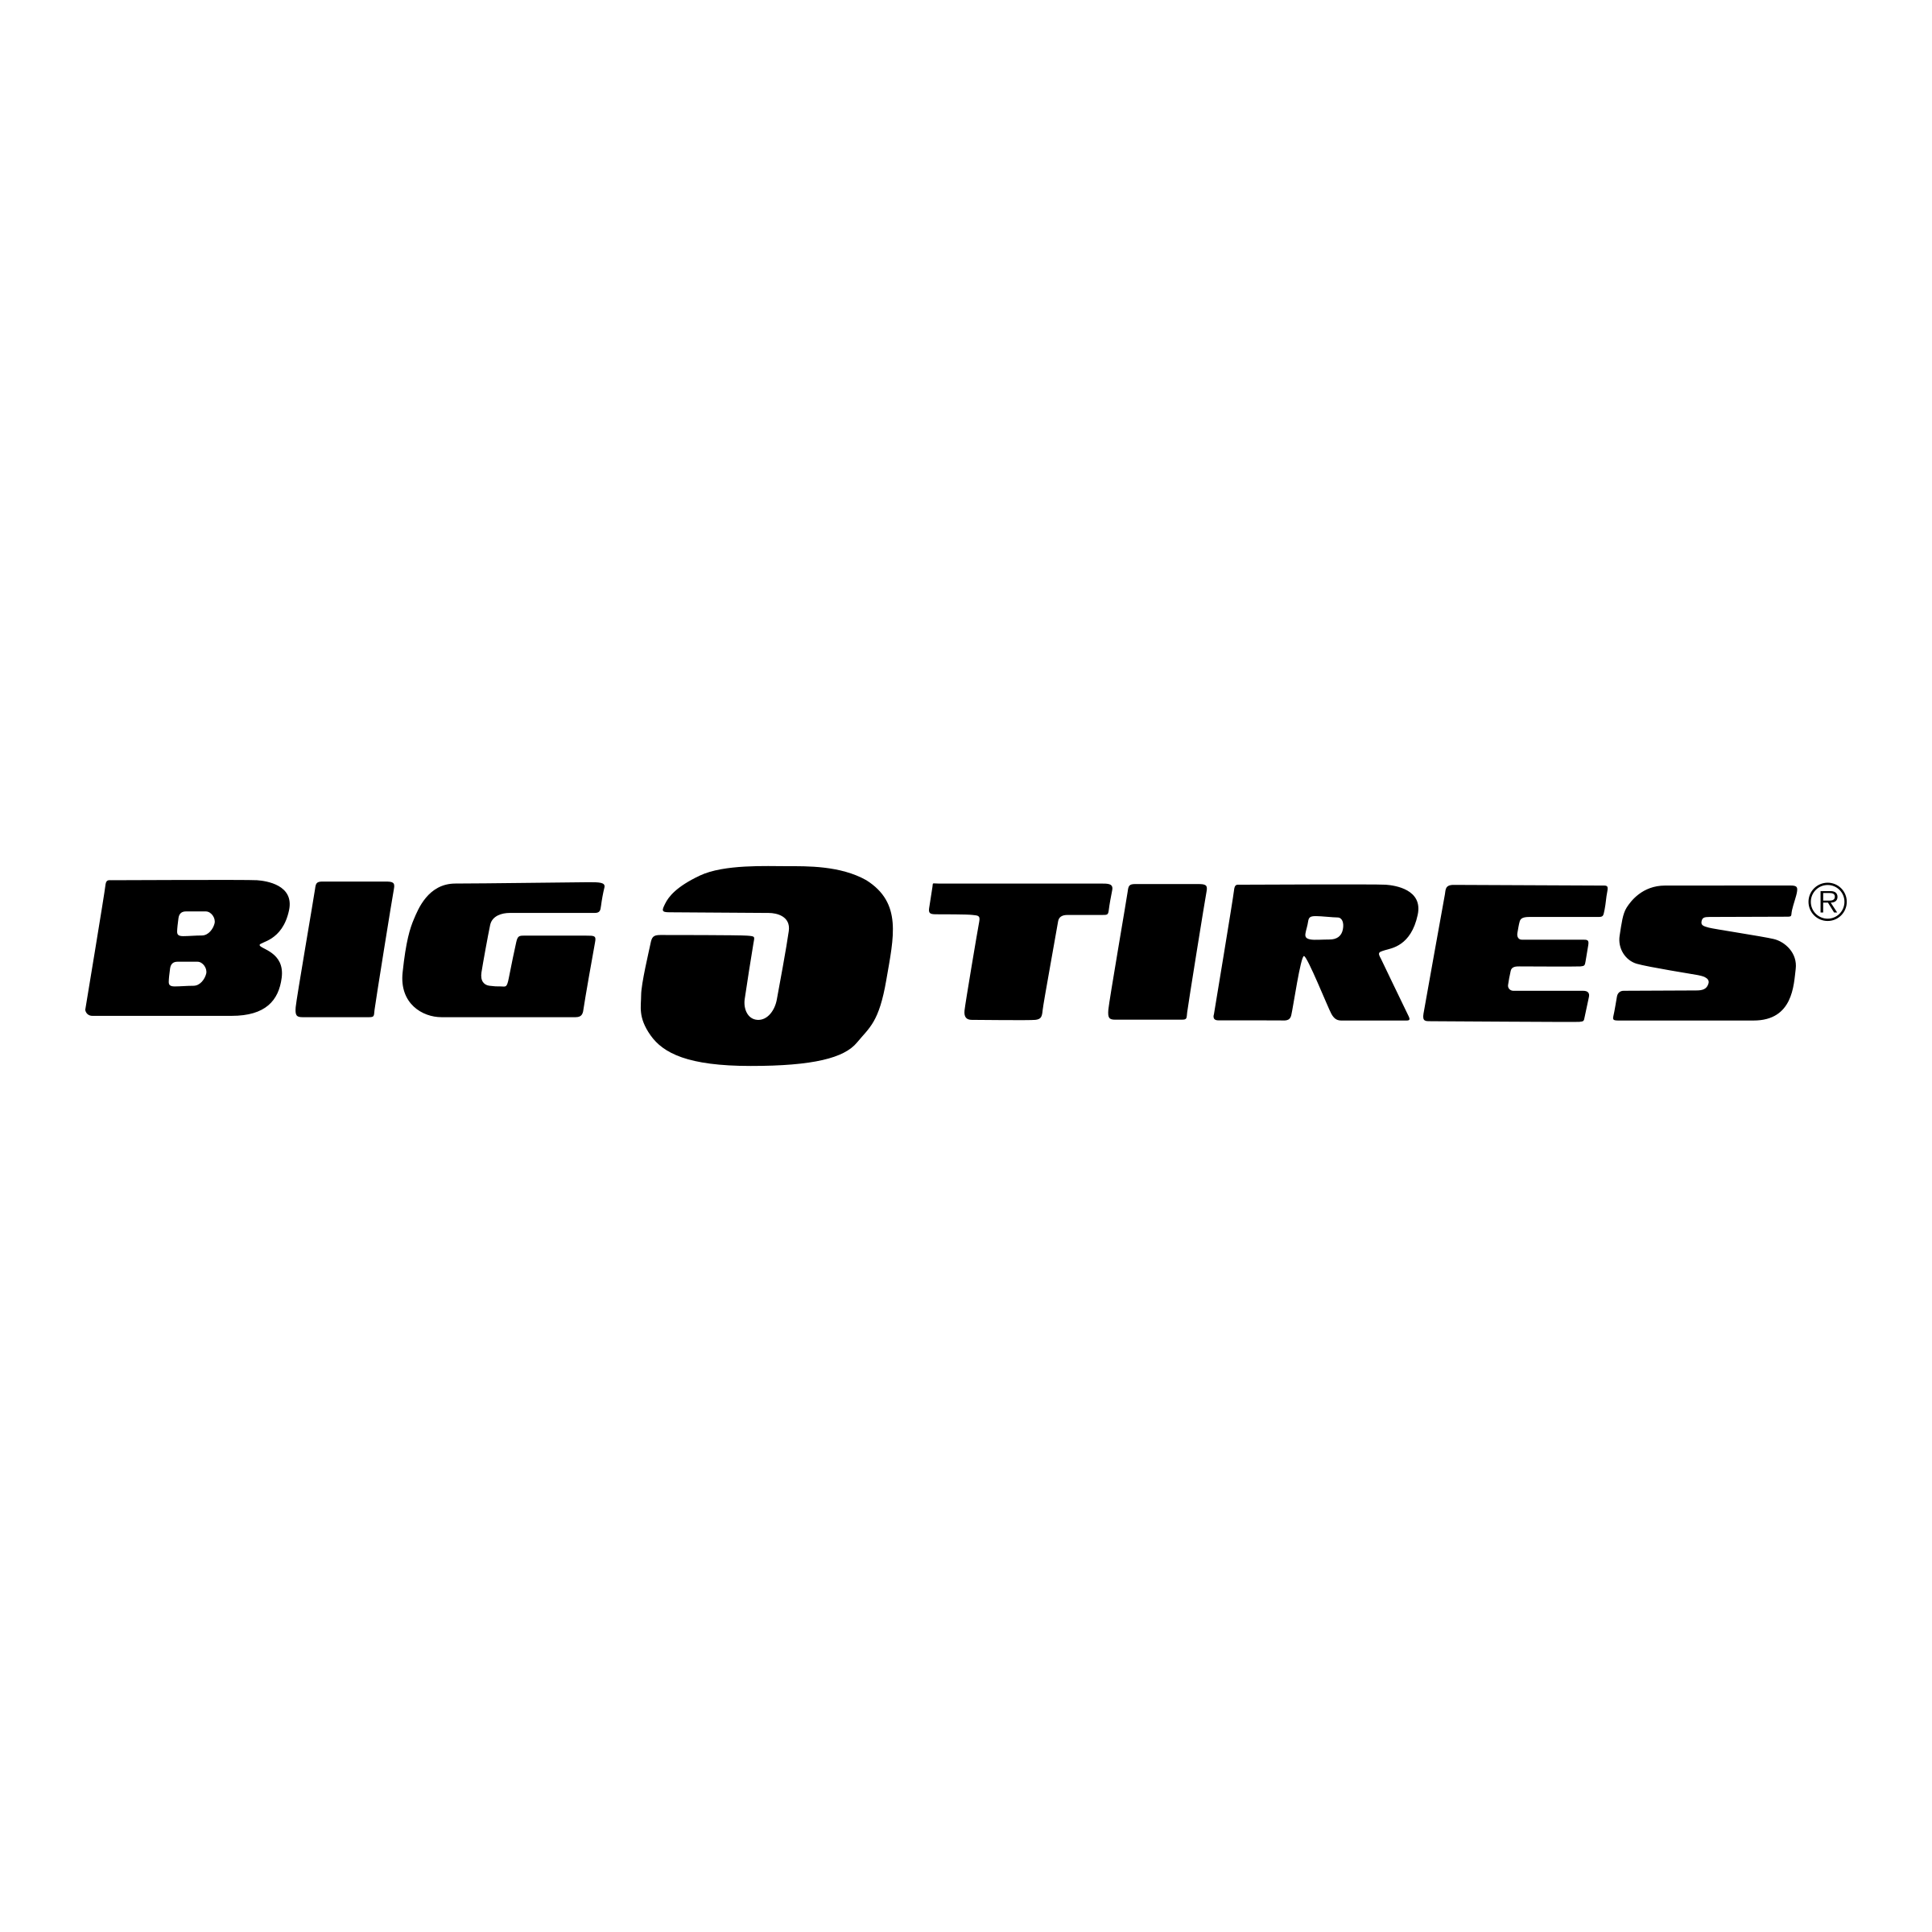 Big O Logo - Big O Tires Logo PNG Transparent & SVG Vector - Freebie Supply